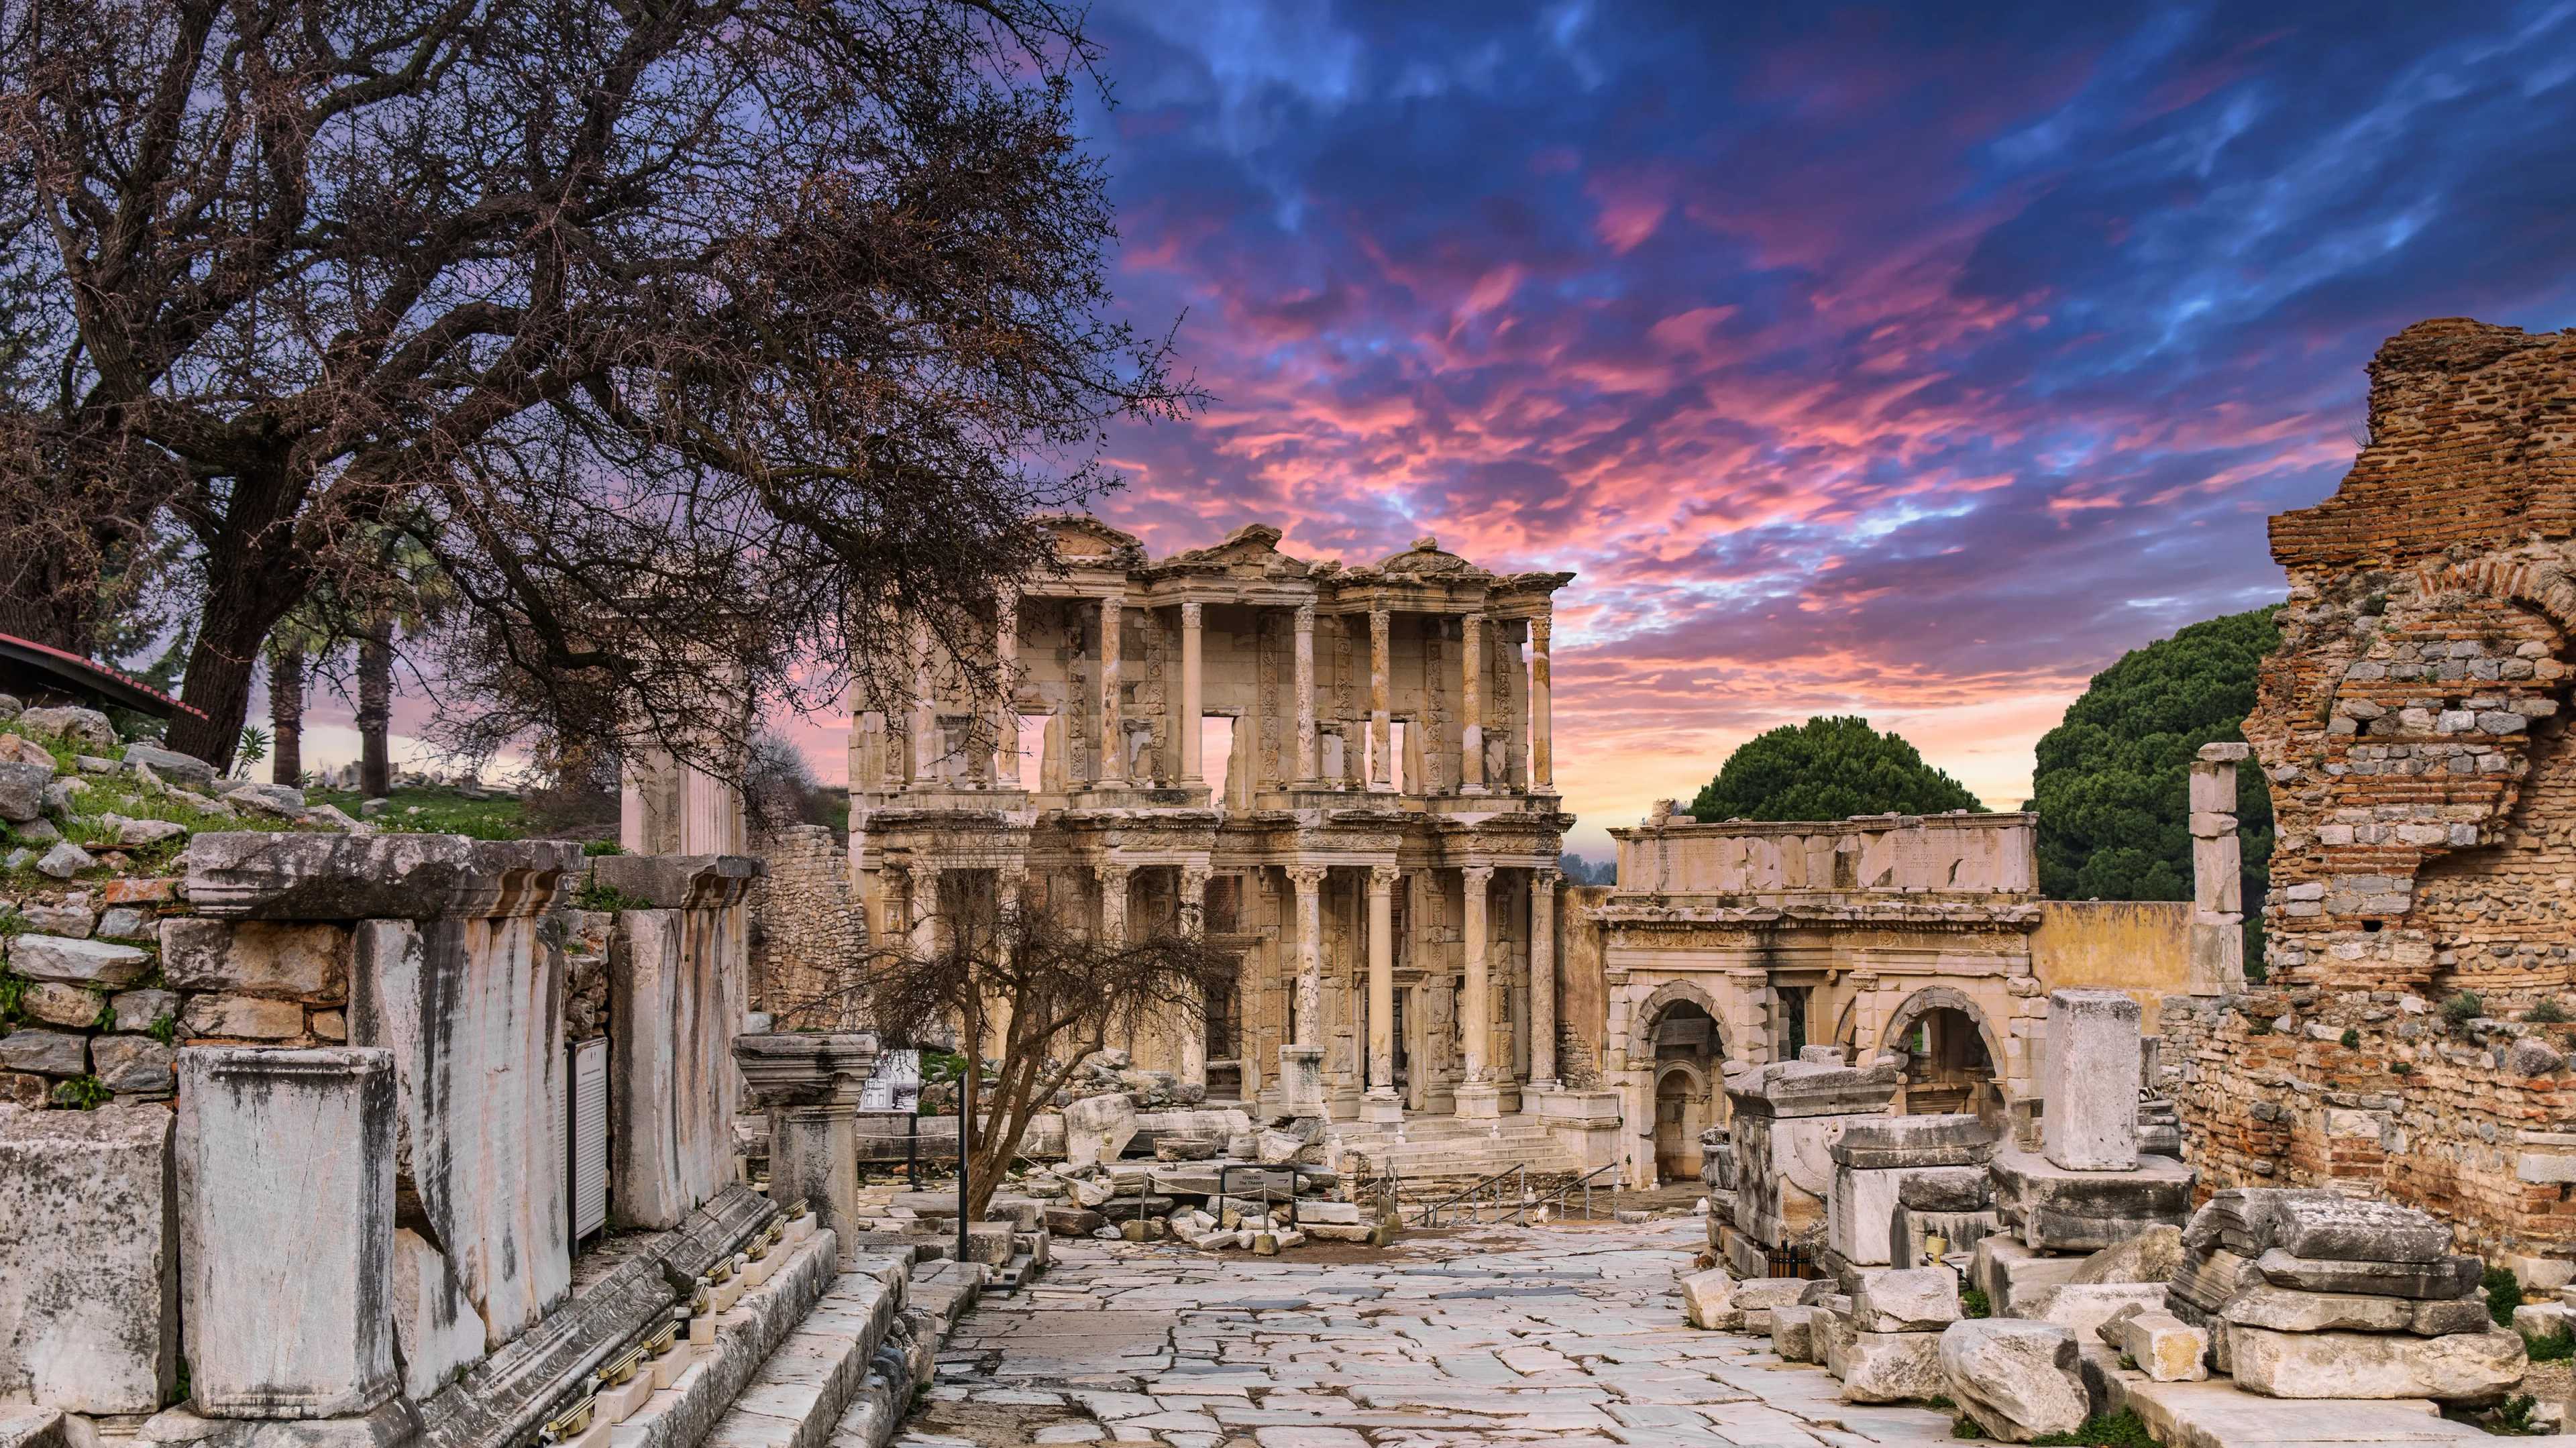 Ephesus Ancient City view image